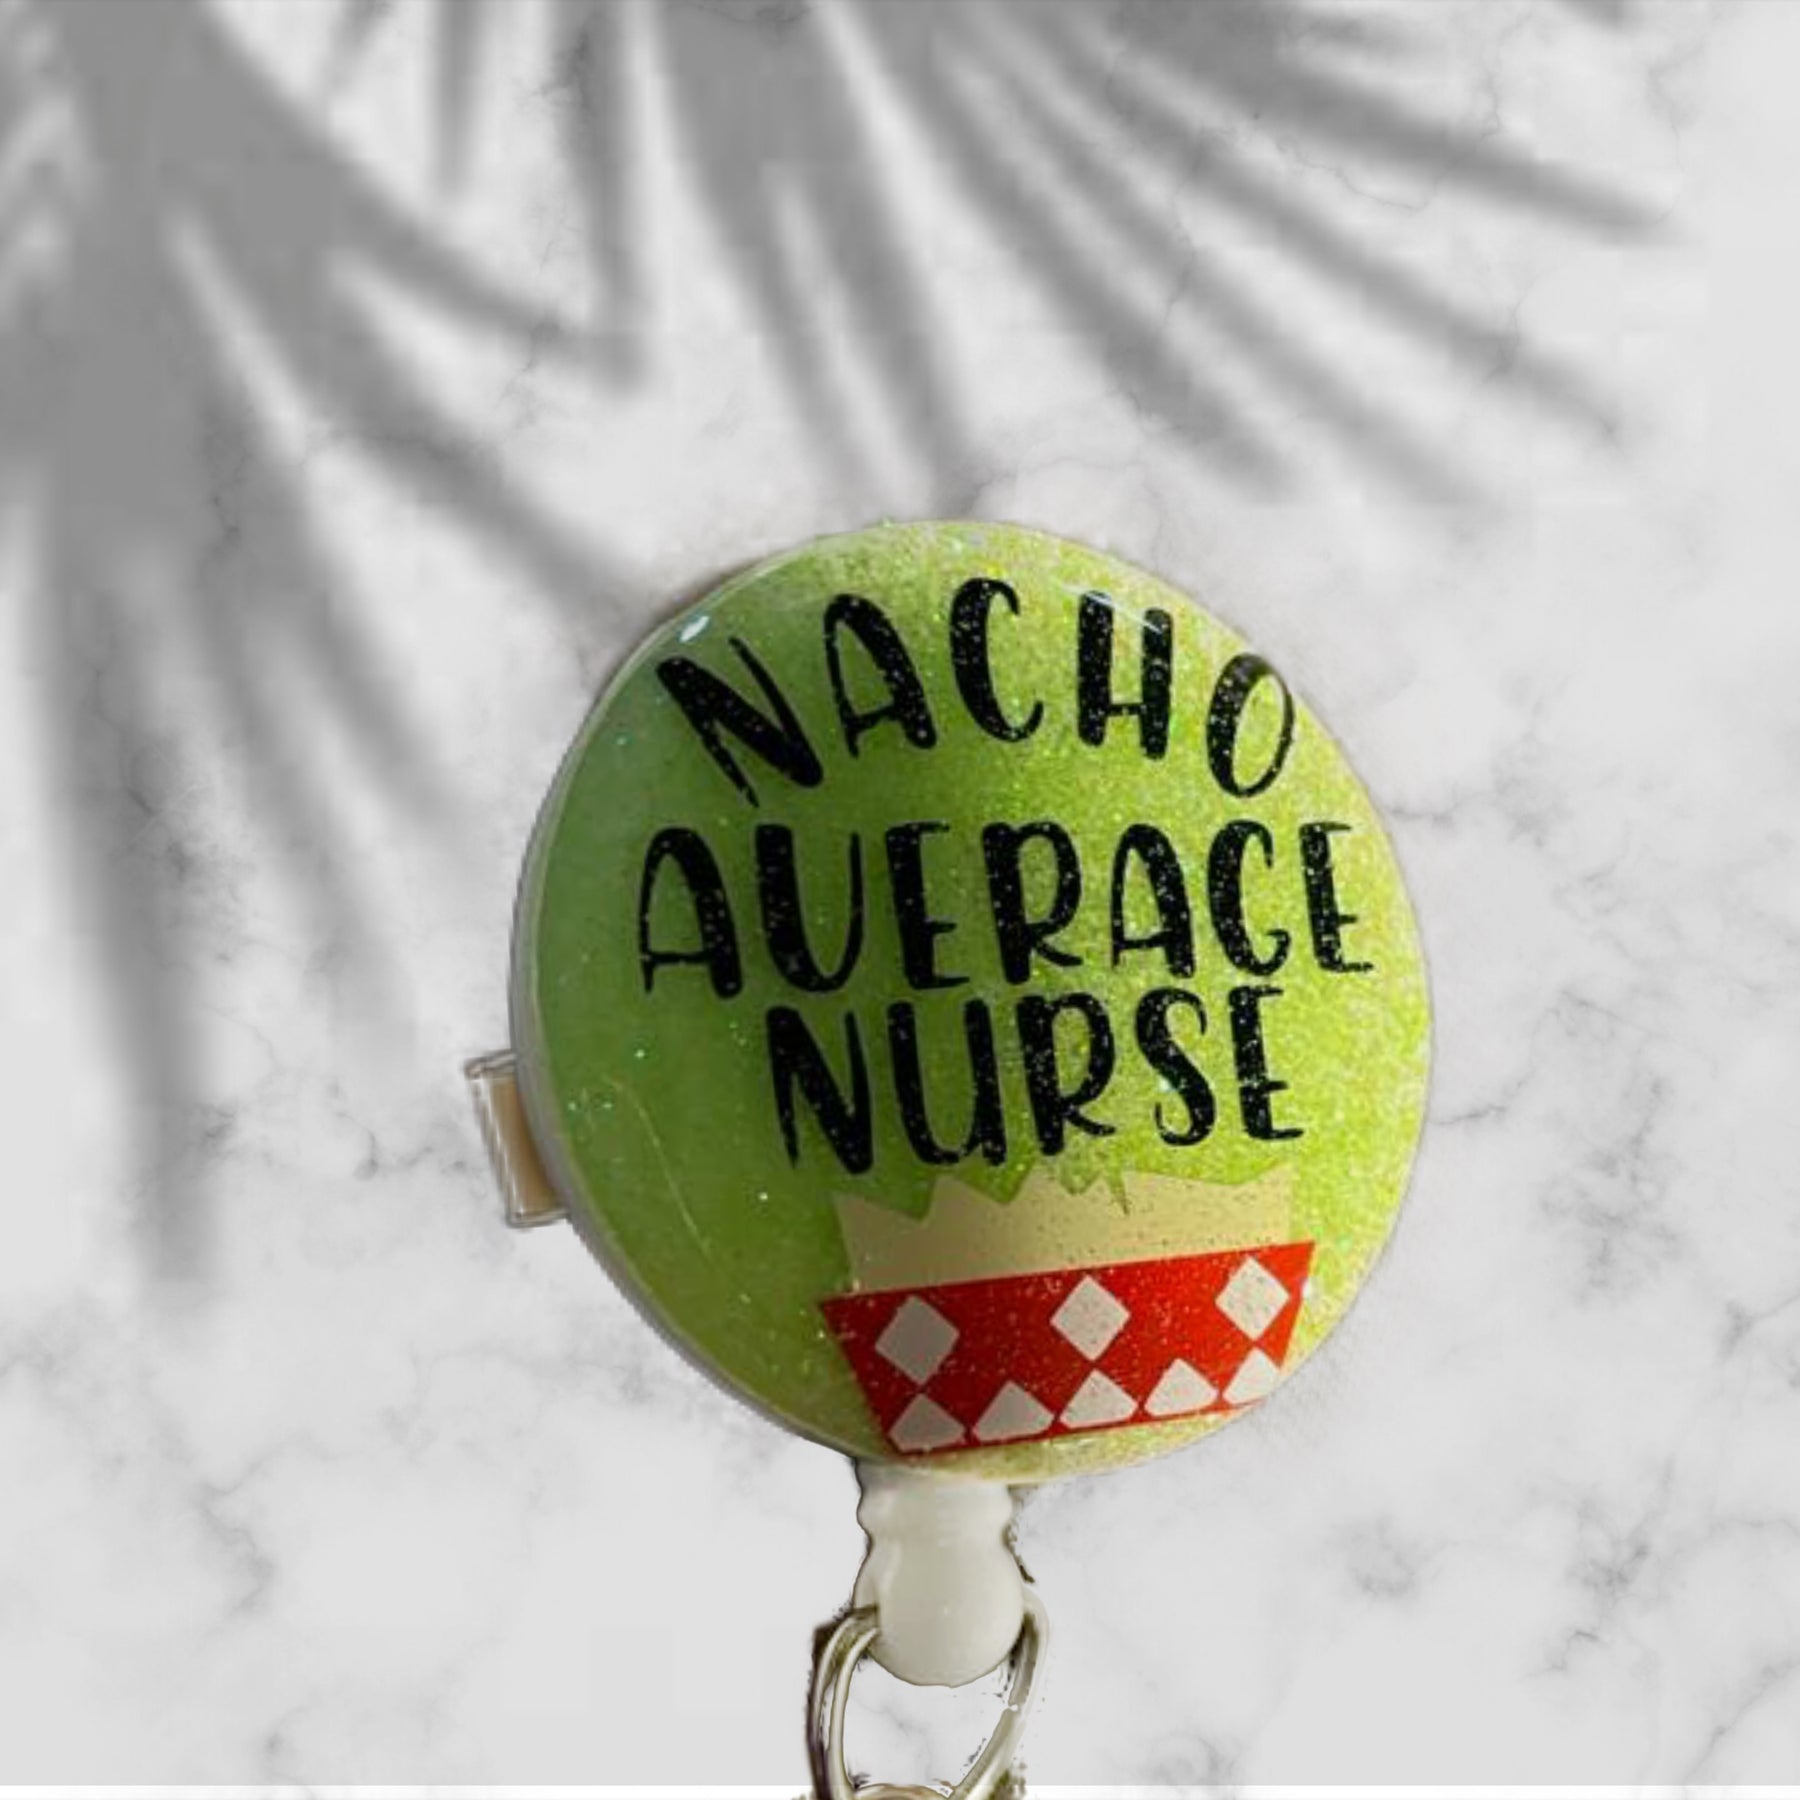 Nacho Average Nurse Badge